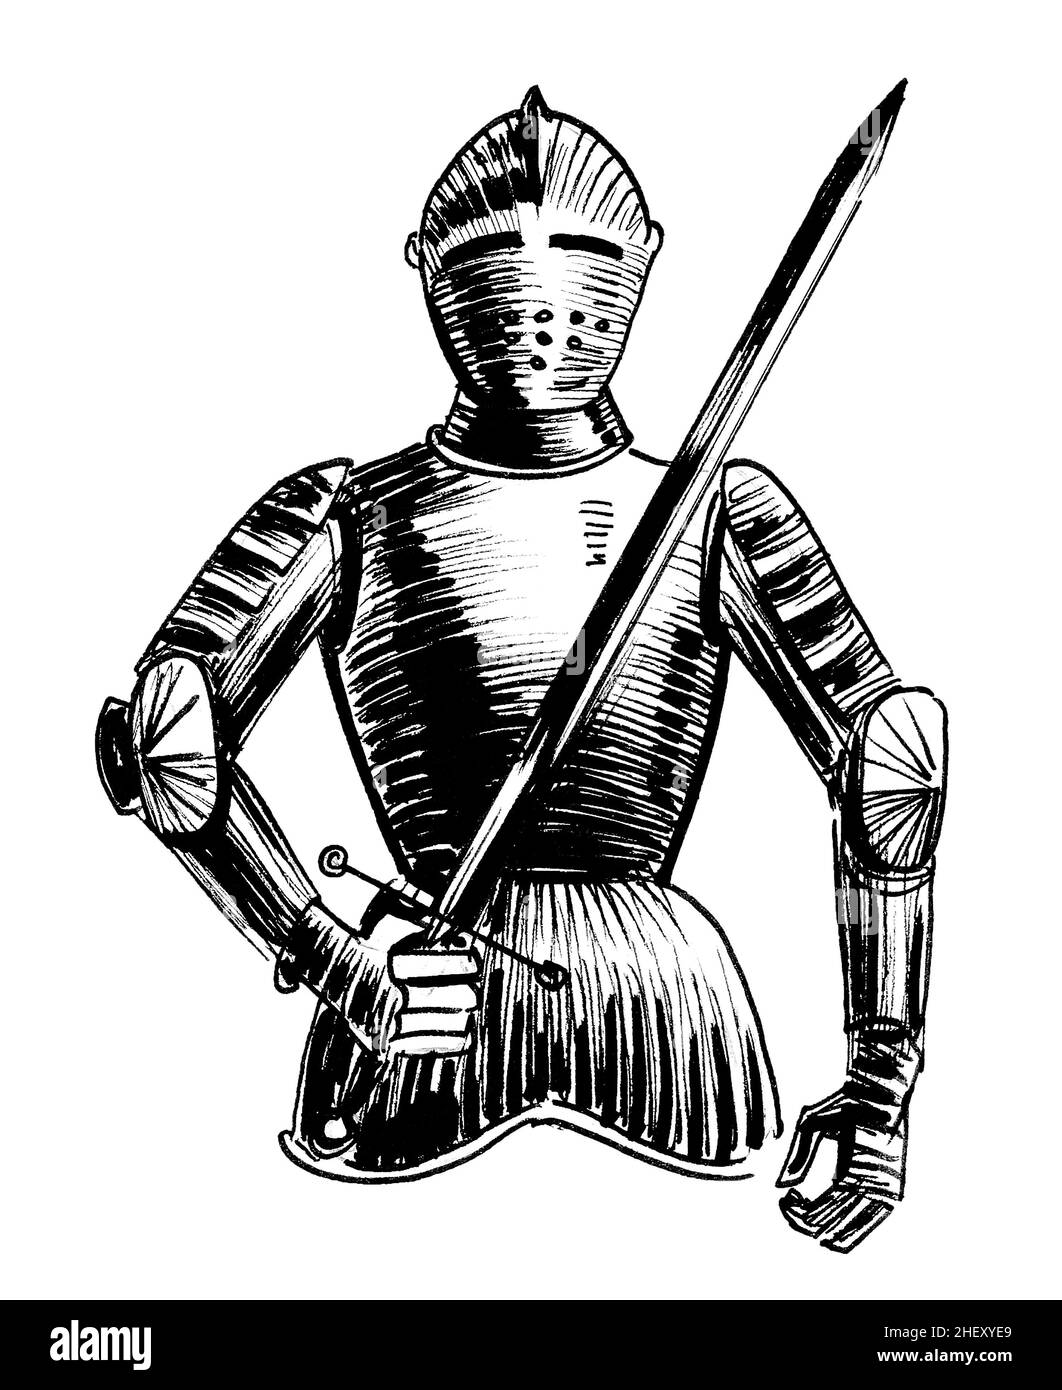 Chevalier médiéval européen avec une épée.Dessin noir et blanc Banque D'Images